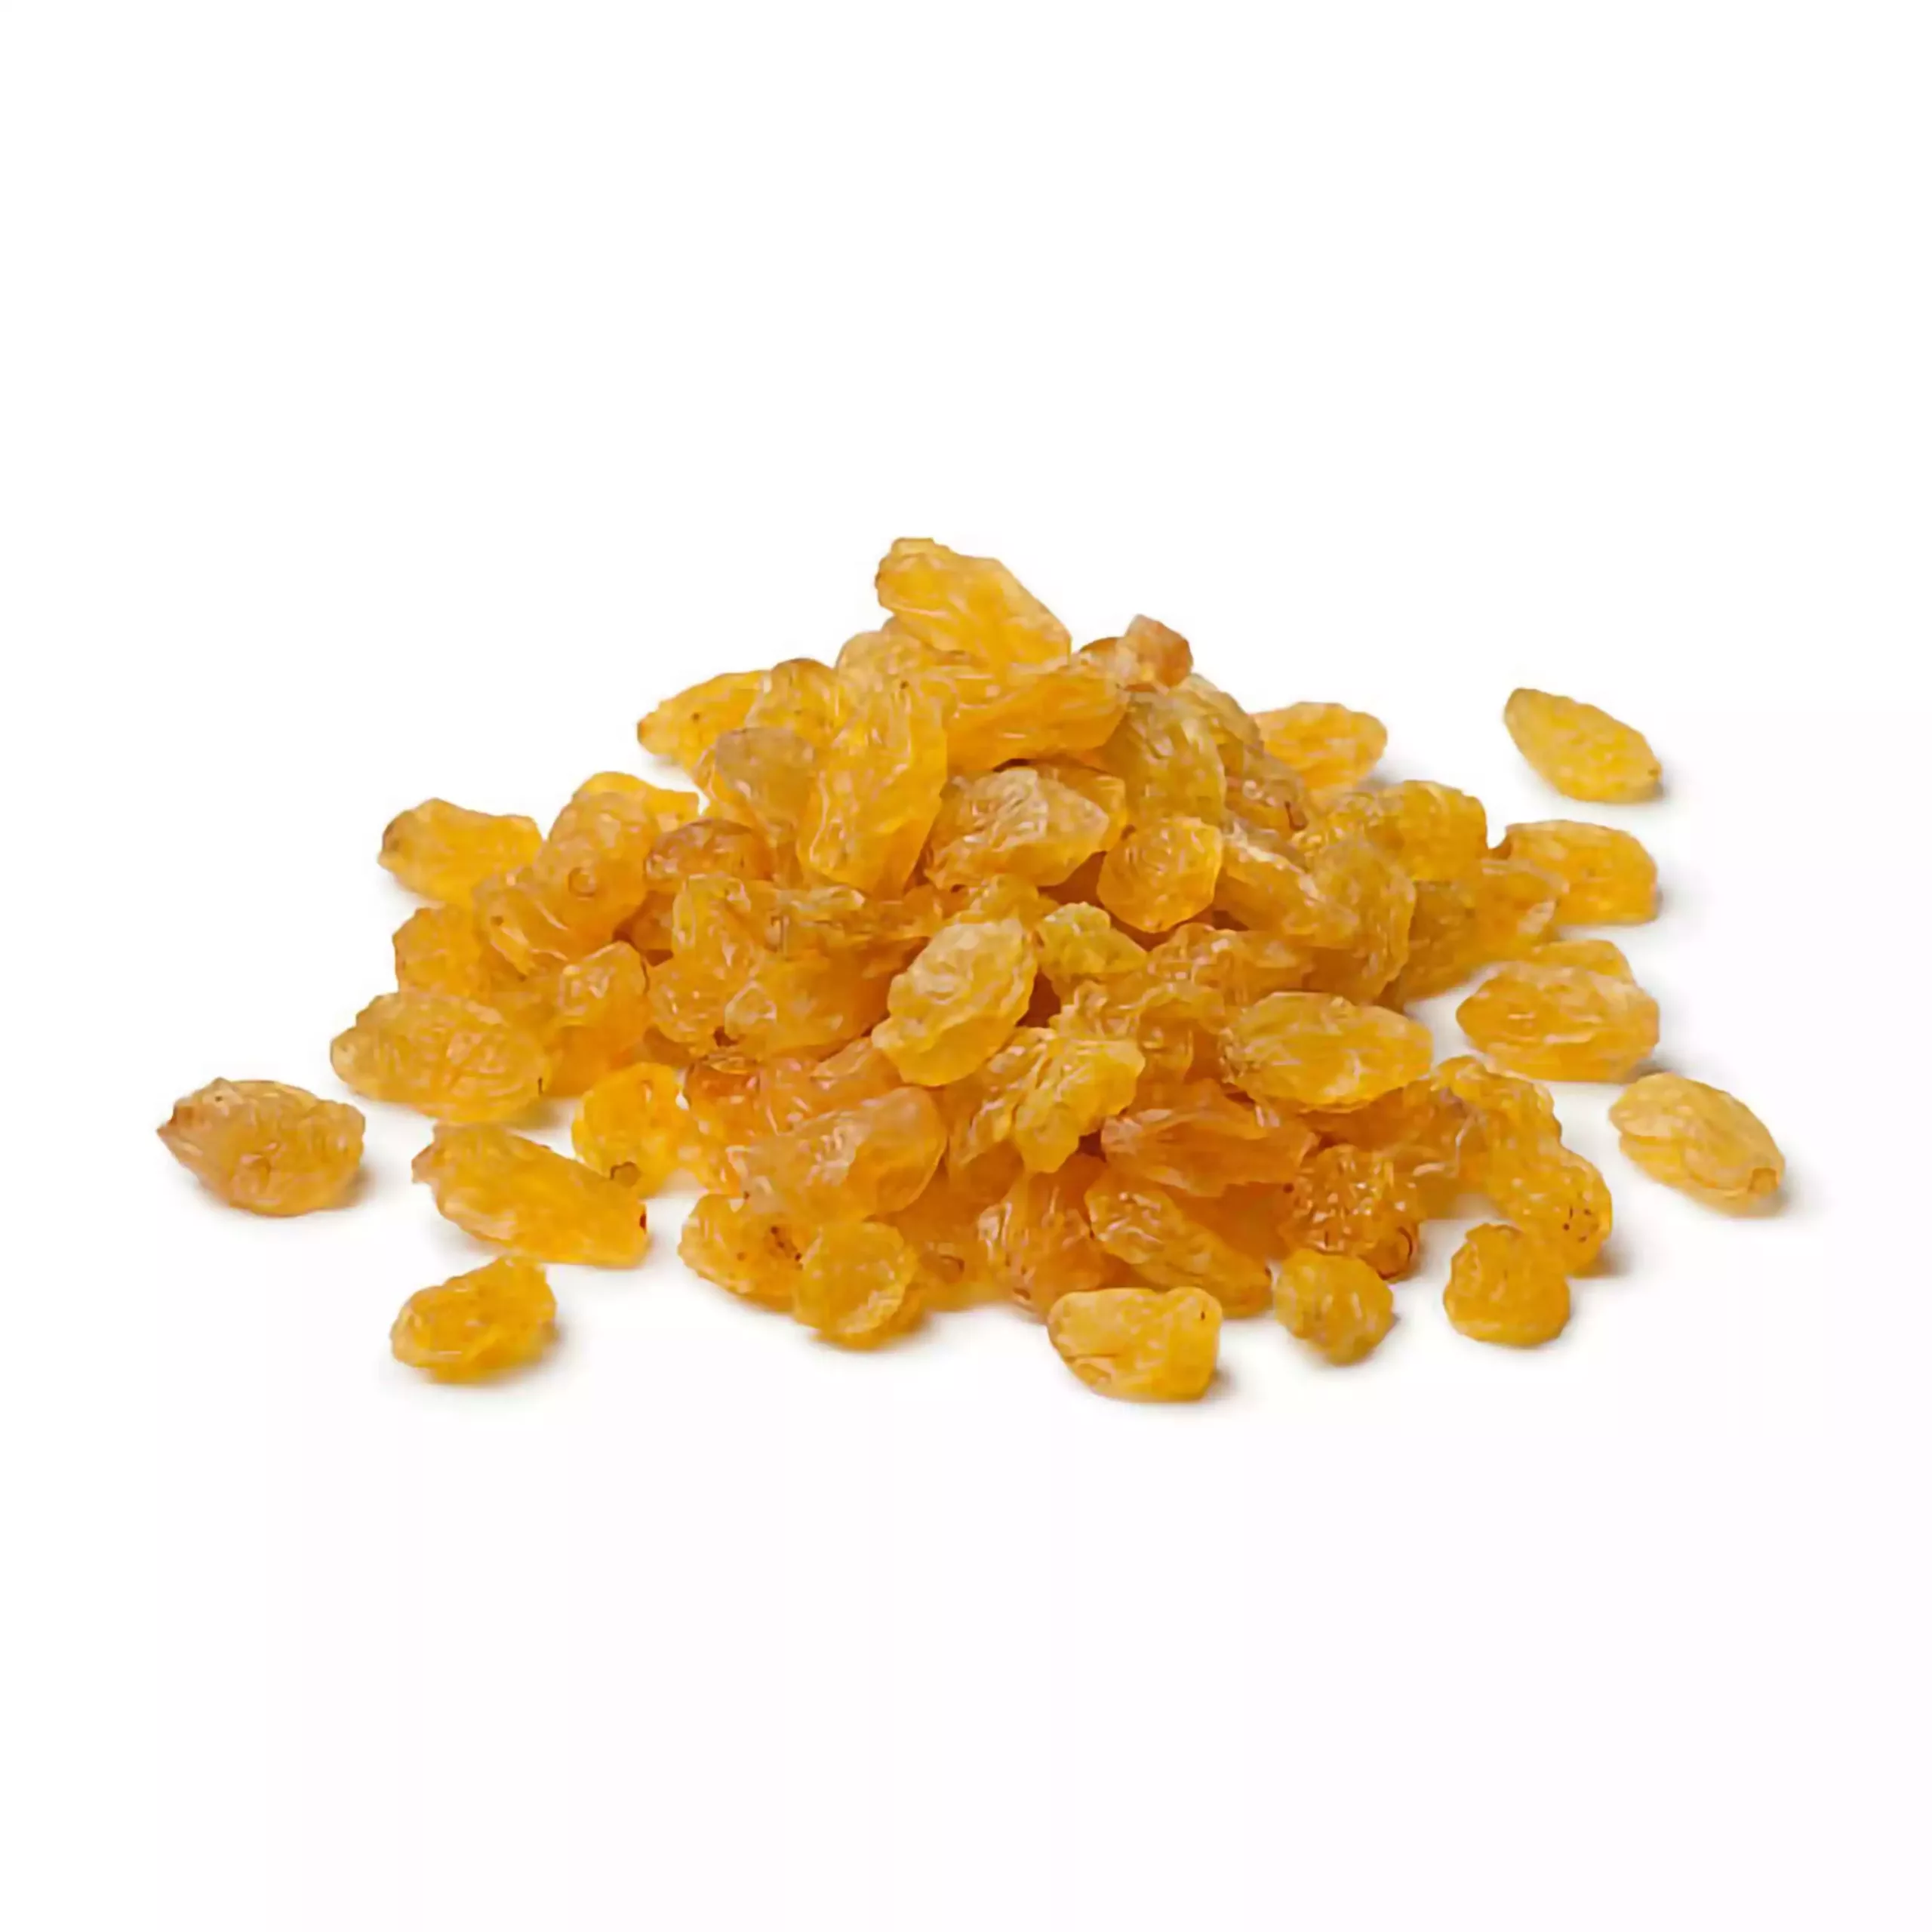 Les Raisins secs golden import - mon-marché.fr